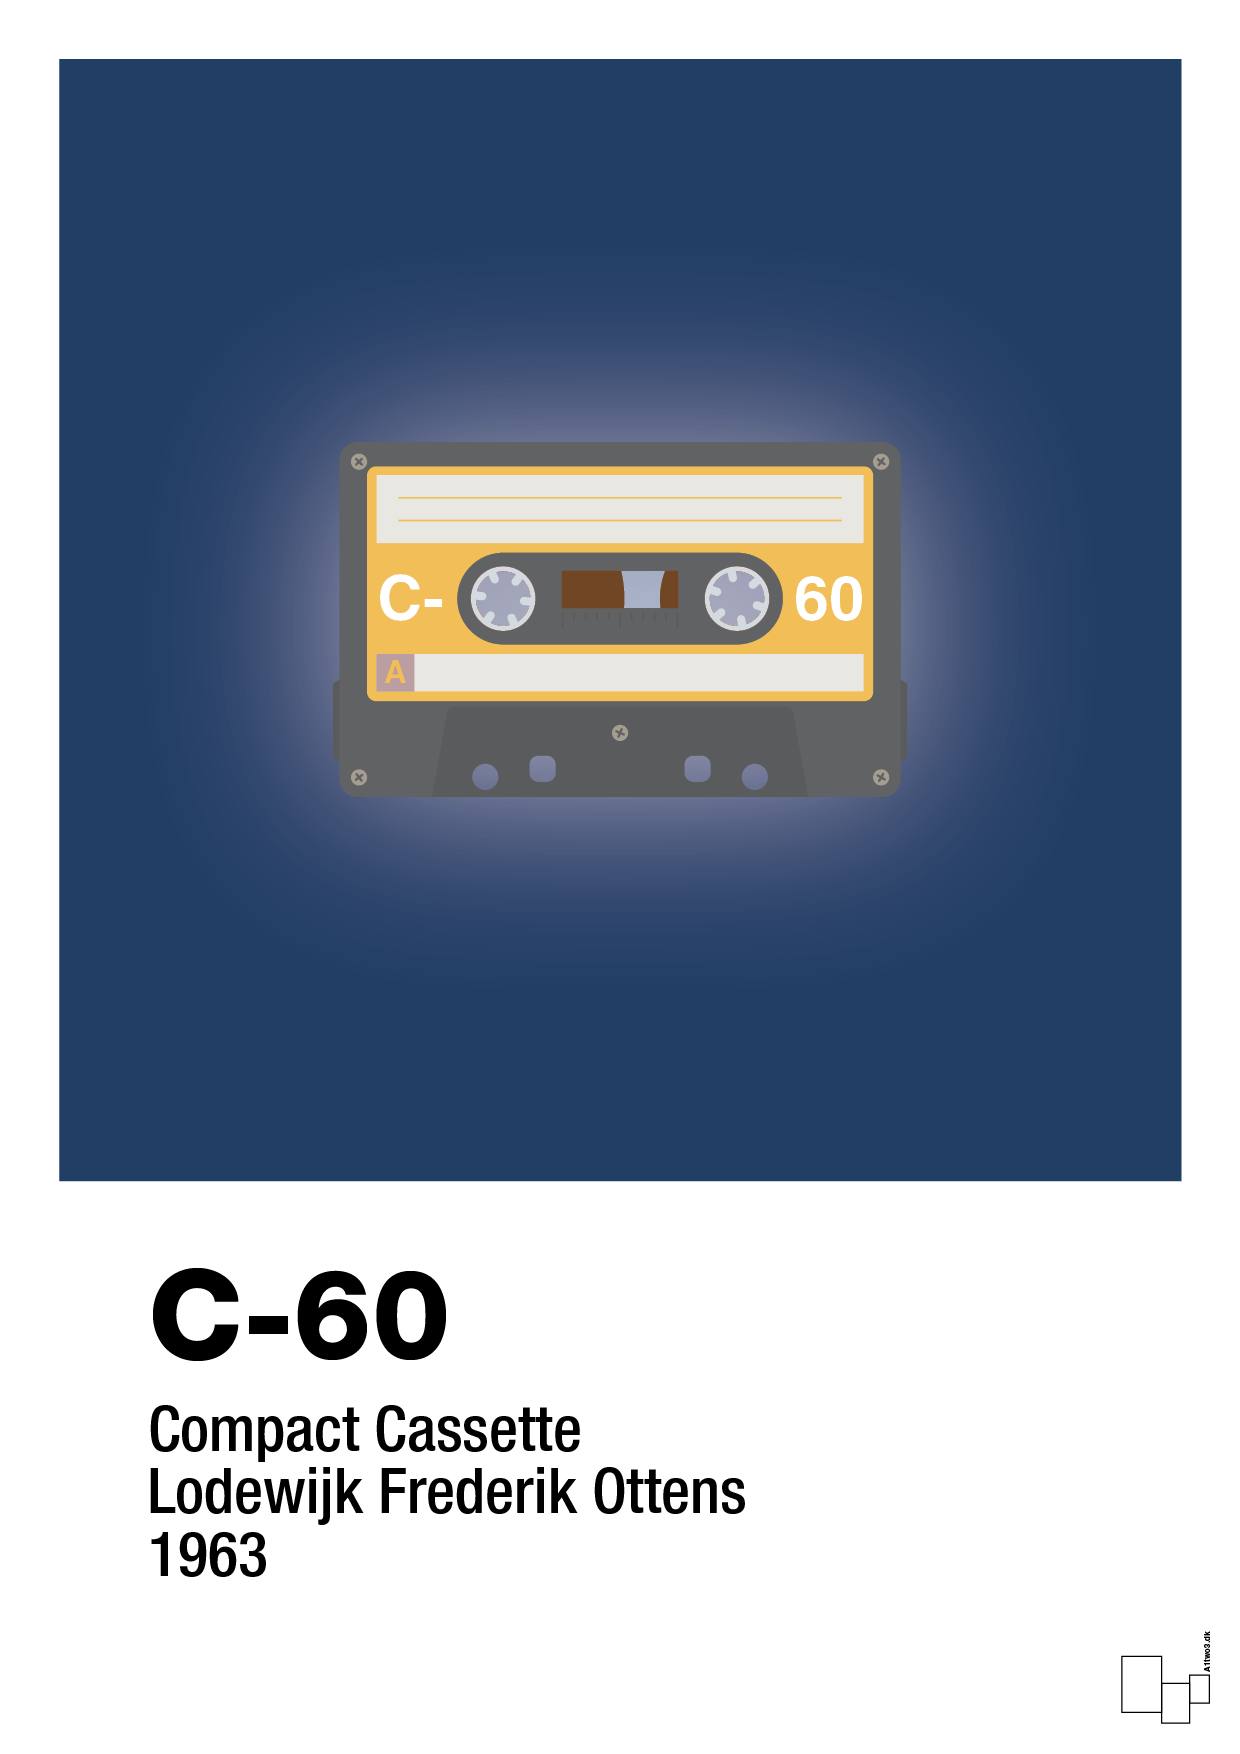 kassettebånd c-60 - Plakat med Grafik i Lapis Blue